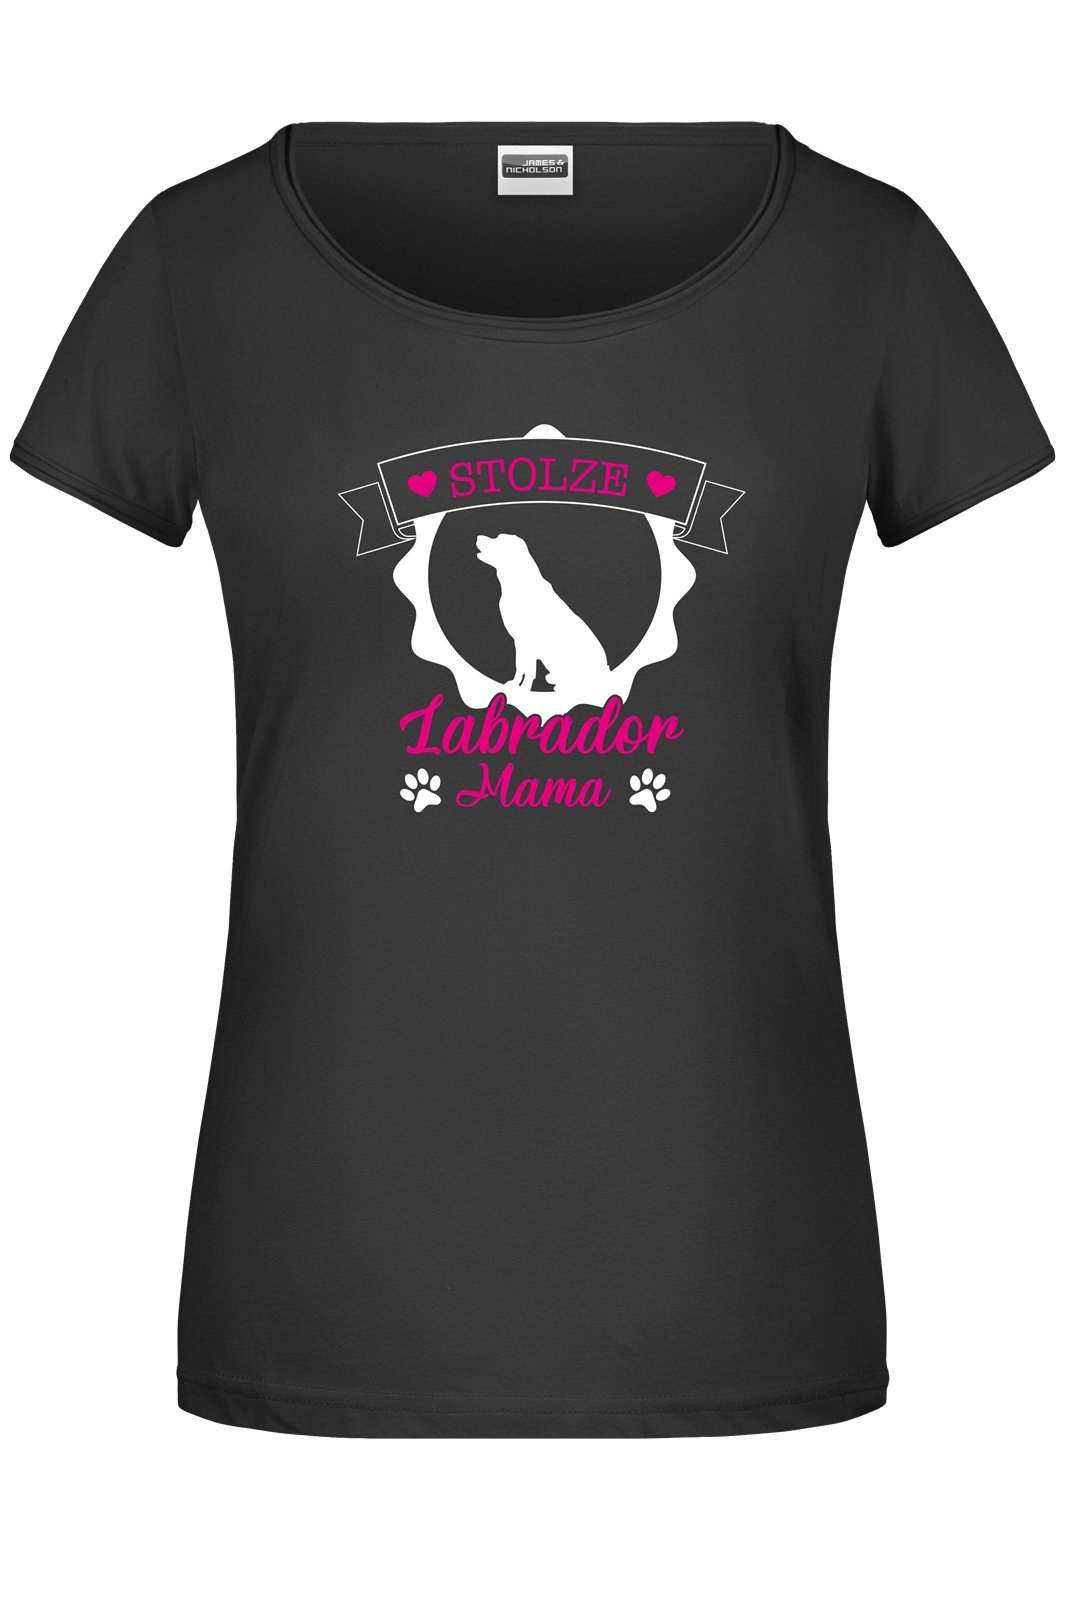 Bild: T-Shirt - Stolze Labrador Mama Geschenkidee